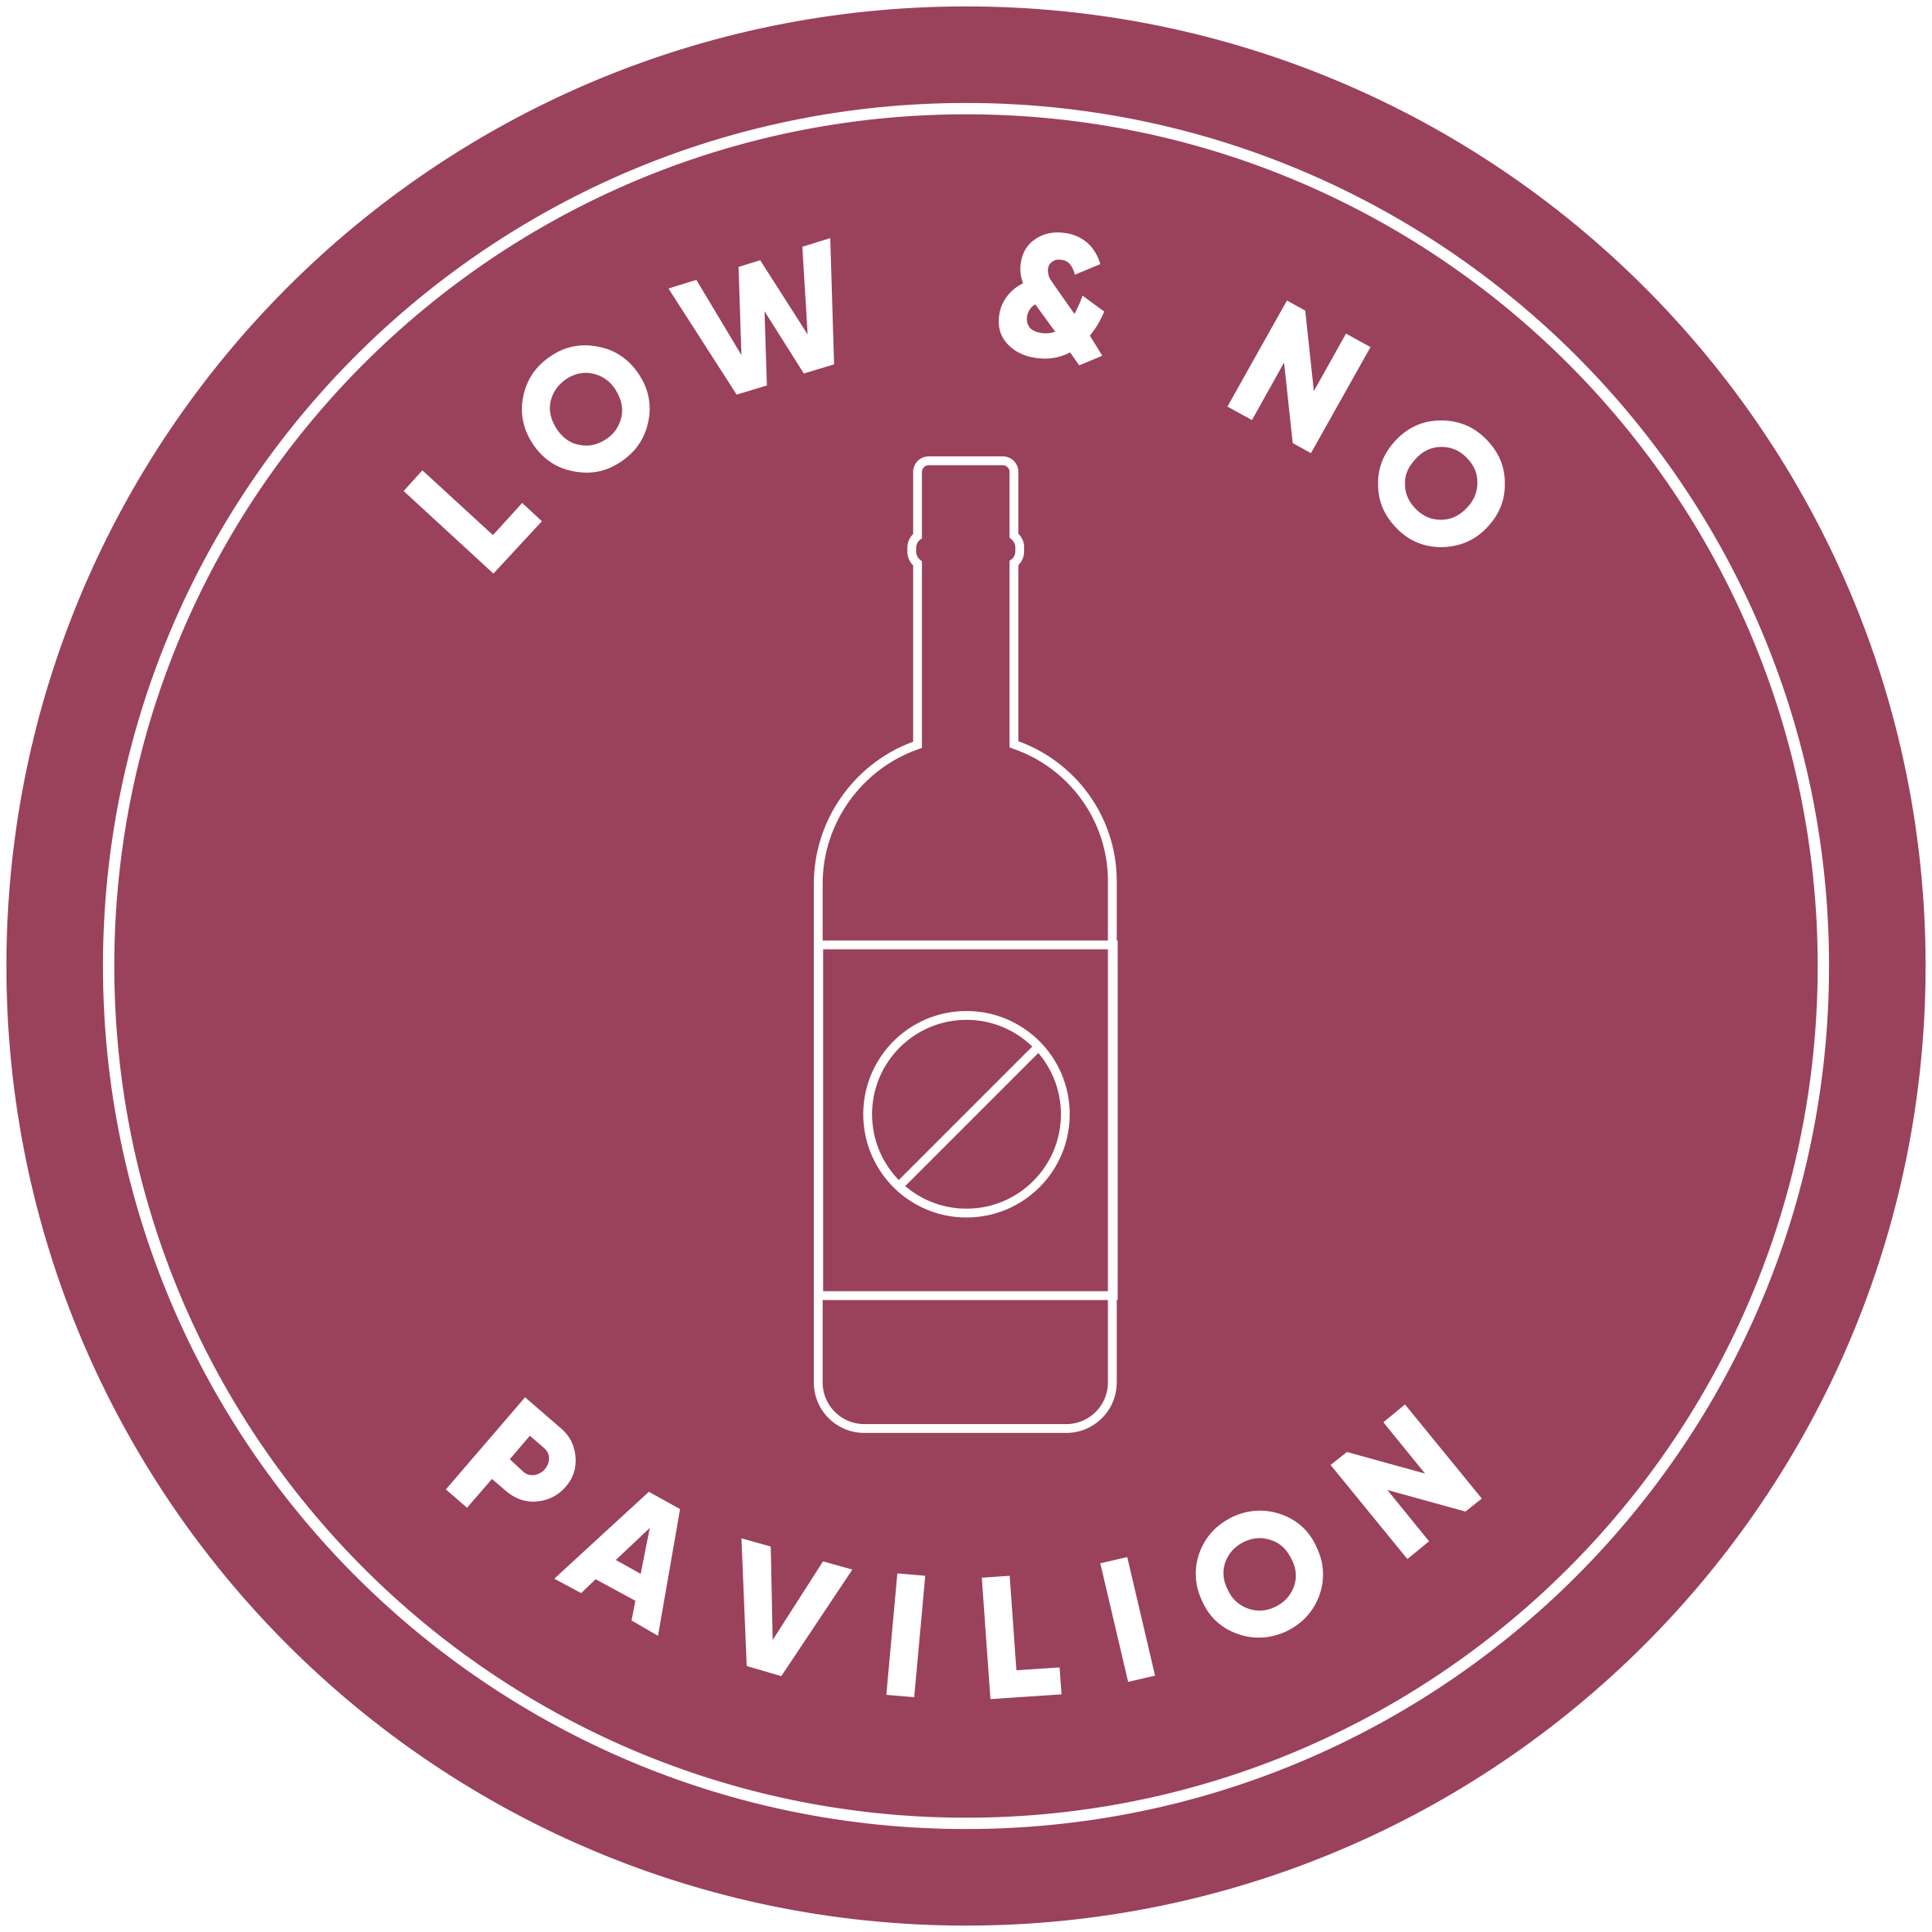 Low & No Pavilion